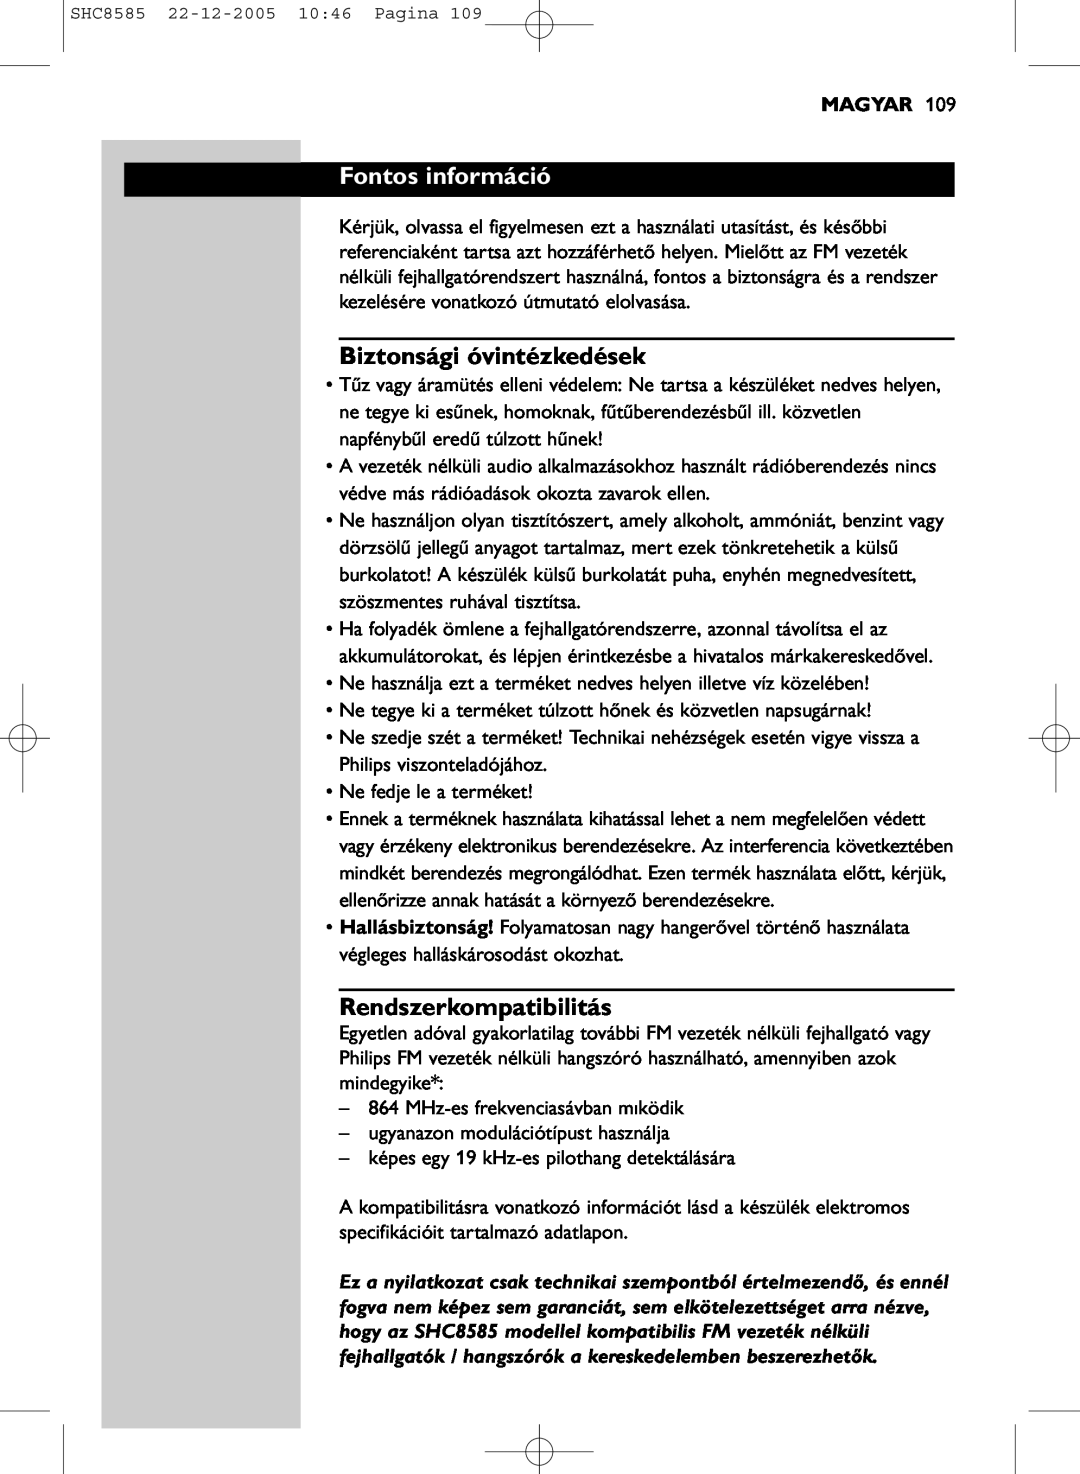 Philips SHC8585/05 manual Fontos információ, Biztonsági óvintézkedések, Rendszerkompatibilitás, Magyar 